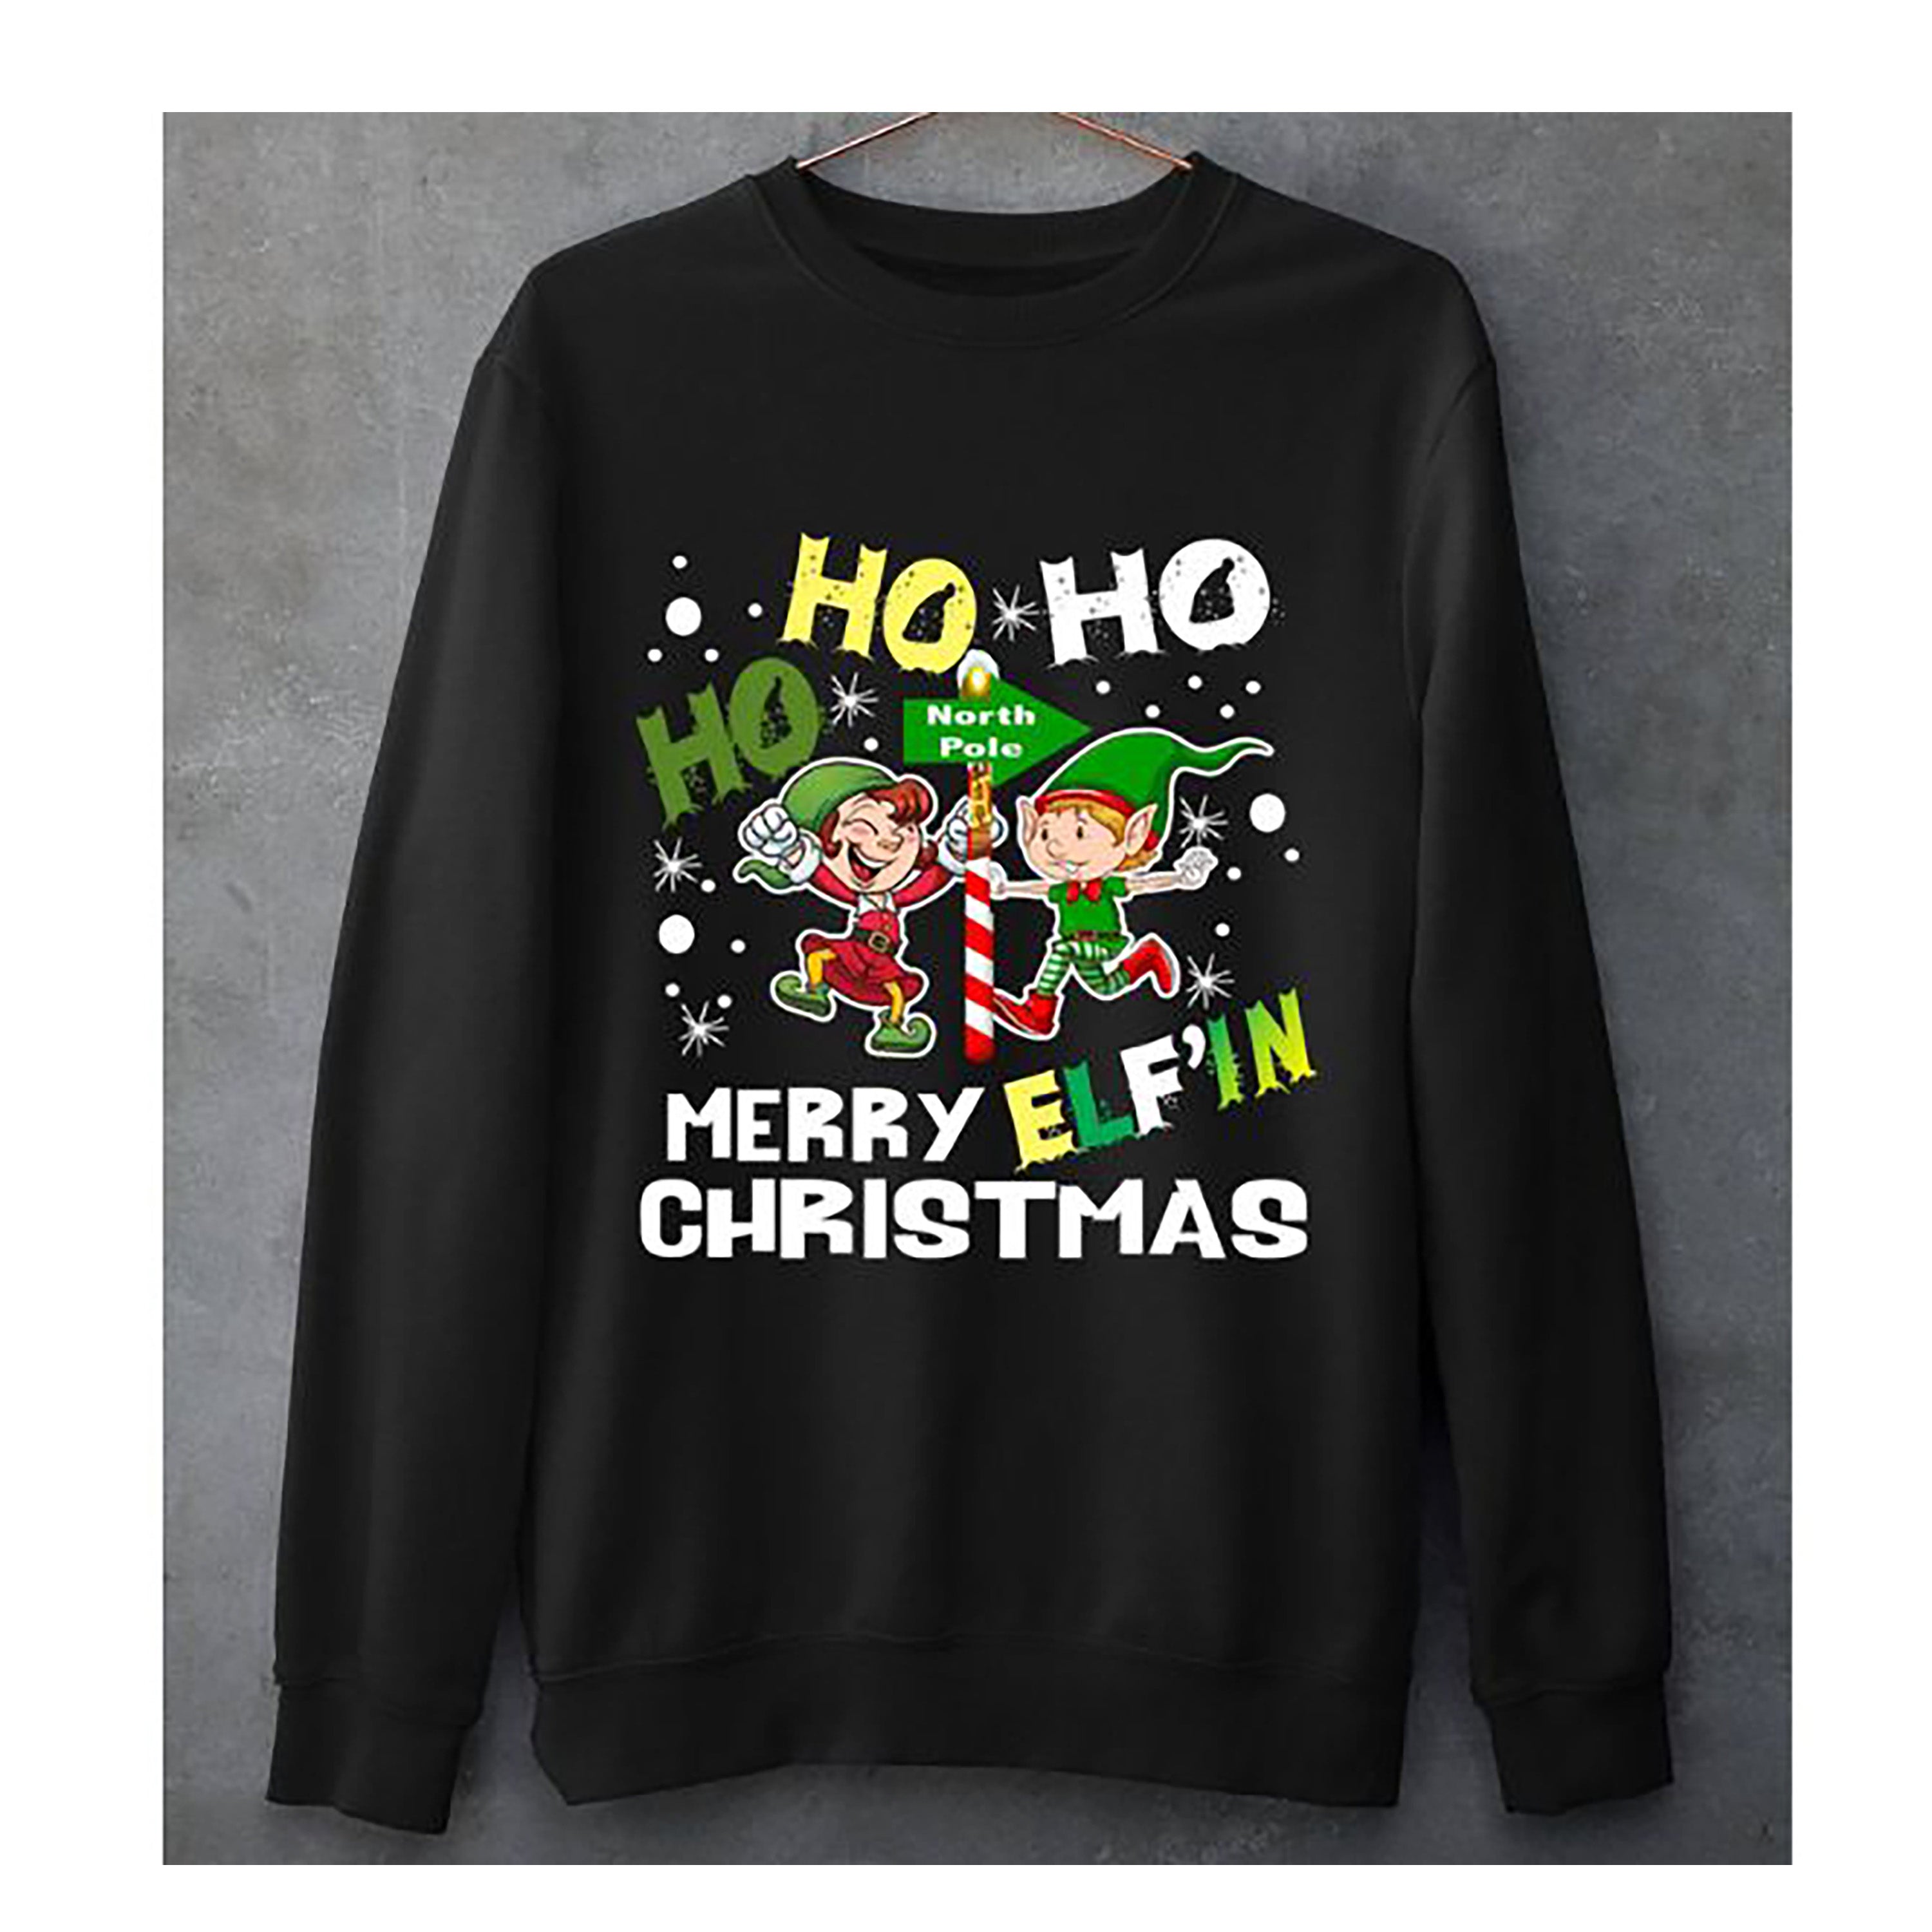 "Merry Elf in Christmas"- Hoodie & Sweatshirt.